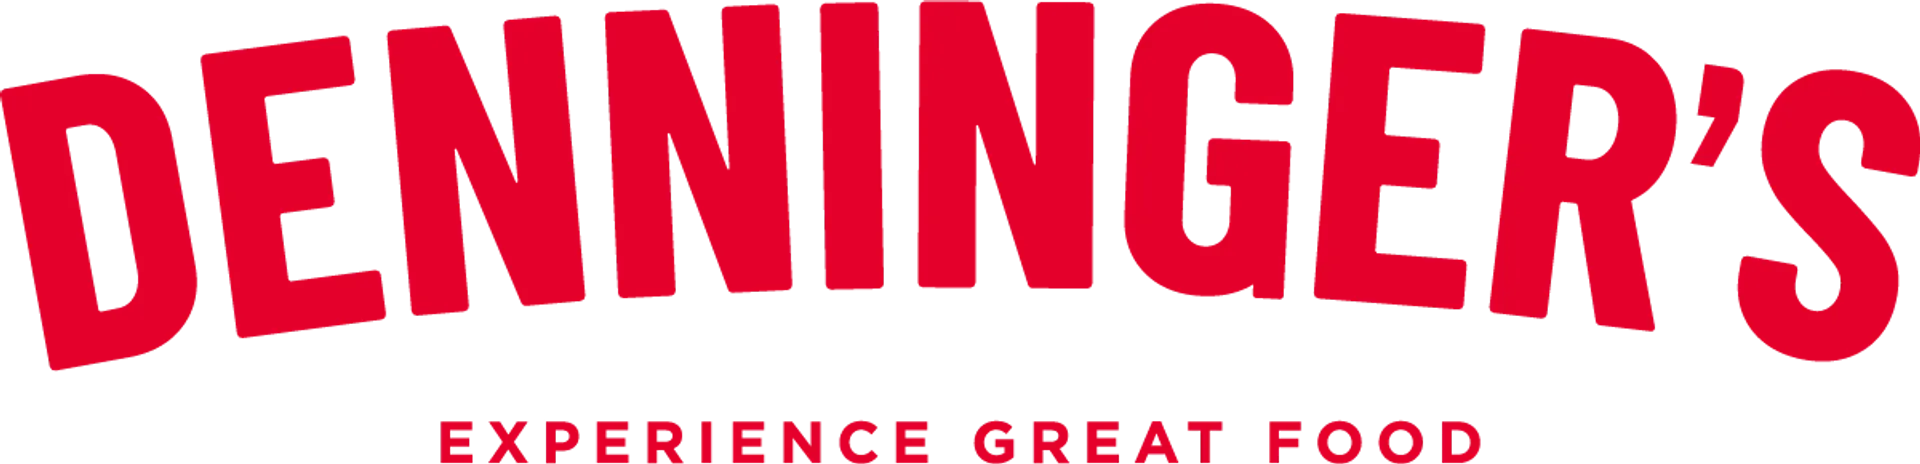 DENNINGER'S logo. Current weekly ad